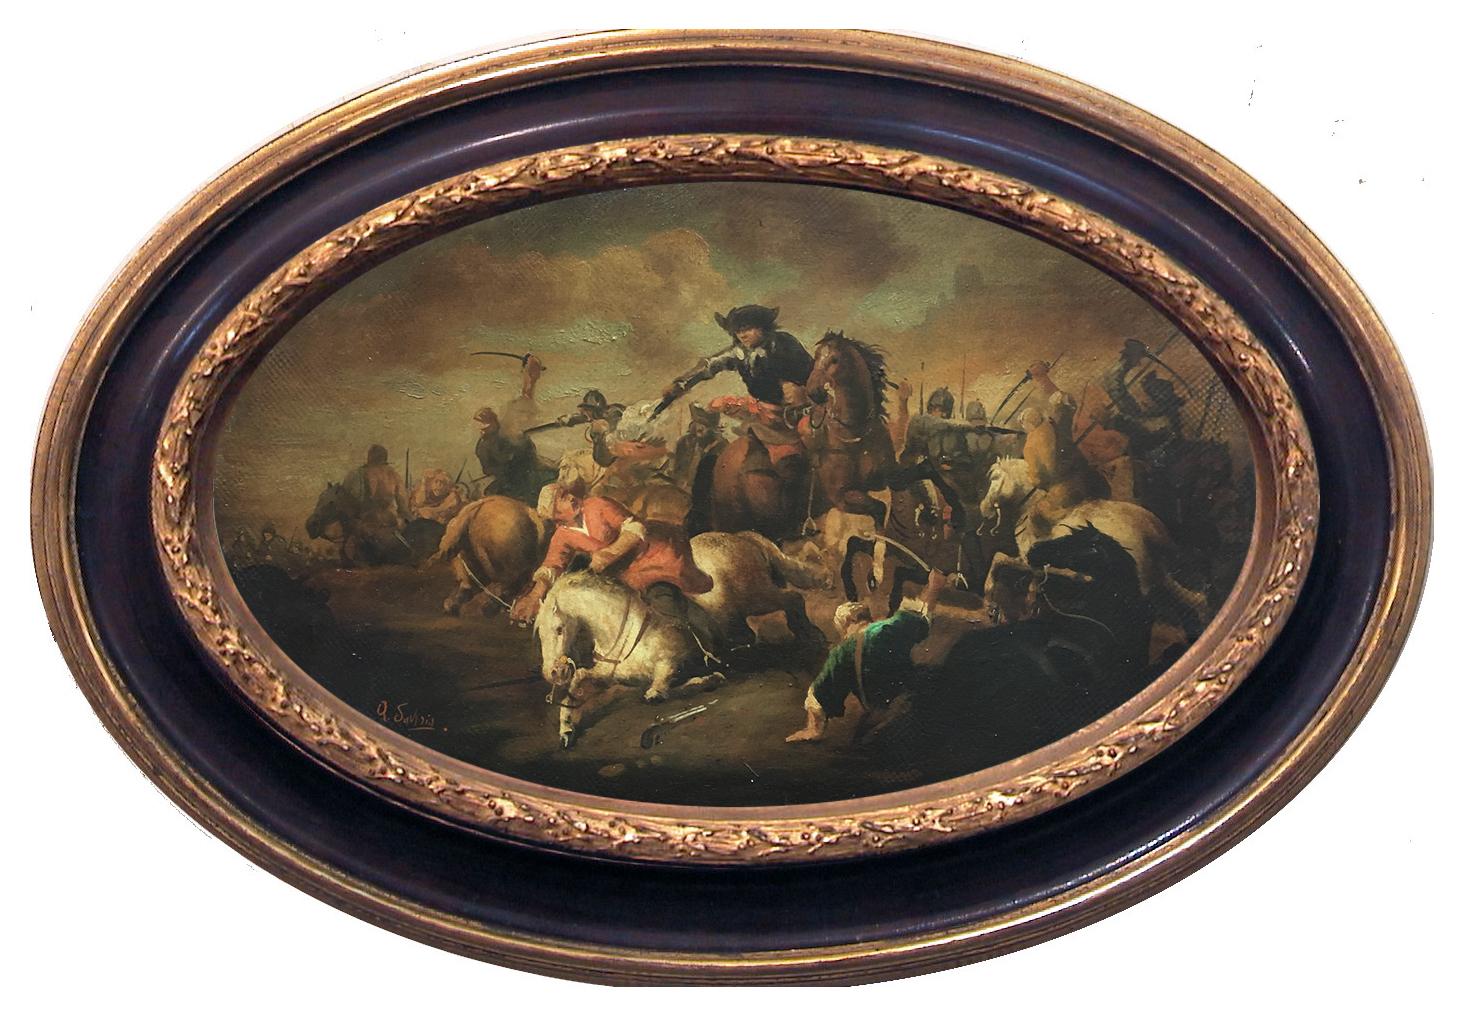 BATAILLE DE CAVALERIE - Huile sur toile ovale cm.30x50 par Antonio Savisio, Italie 2005
Le maestro Antonio Savisio s'est inspiré des chefs-d'œuvre du grand maestro napolitain Salvator Rosa, auteur de grandes scènes de guerre et de cavalerie, à tel